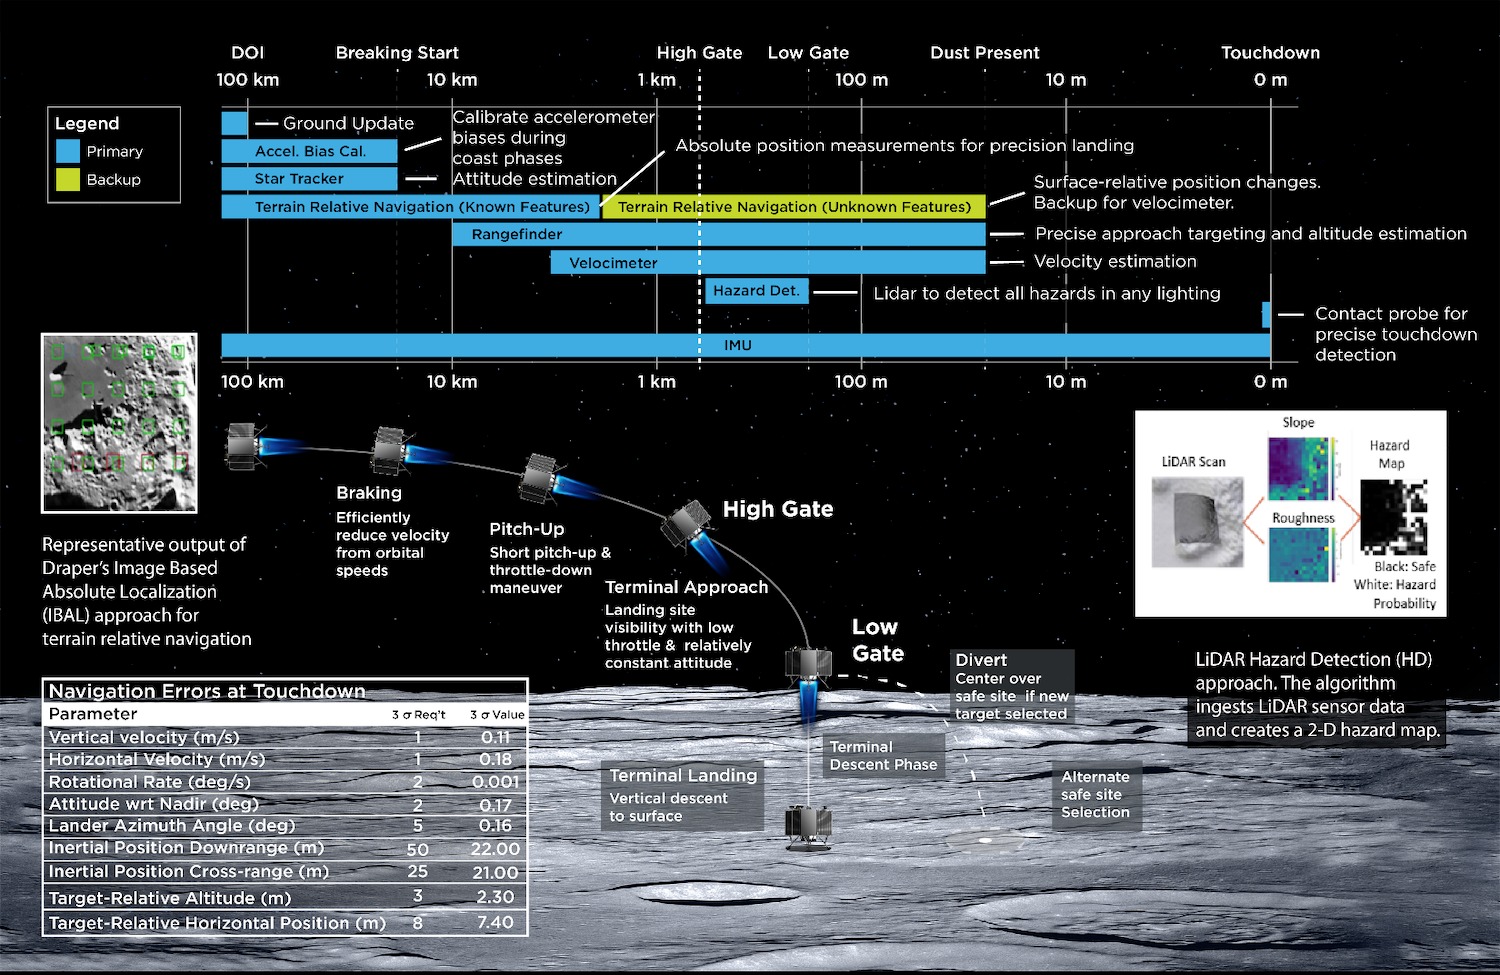 Plan slijetanja Draperovog landera na površinu Mjeseca 2025. godine (©Draper).